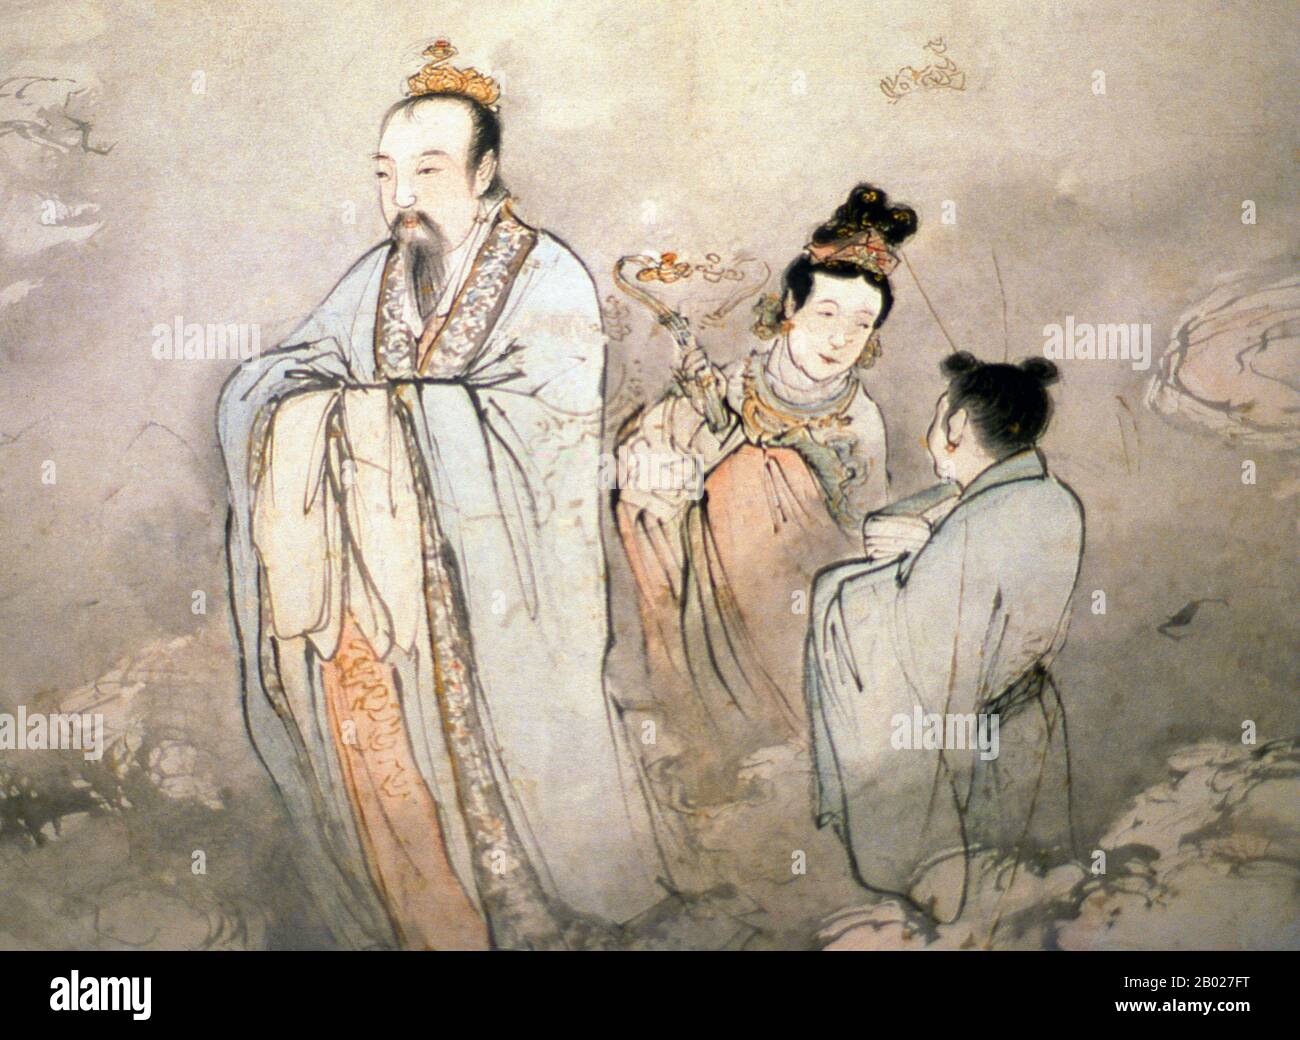 Un défilement suspendu (chinois: 立軸; pinyin: lìzhóu; également appelé 軸 ou 掛軸) est l'une des nombreuses façons traditionnelles d'afficher et d'exposer la peinture chinoise et la calligraphie. L'affichage de l'art de telle manière était approprié pour l'appréciation et l'évaluation publiques de l'esthétique du défilement dans son intégralité par le public. L'artisanat traditionnel impliqué dans la création d'une telle œuvre est considéré comme un art en soi. Les fixations peuvent être divisées en quelques sections, telles que les rouleaux à main, les rouleaux suspendus, les feuilles d'album et les écrans entre autres. Banque D'Images